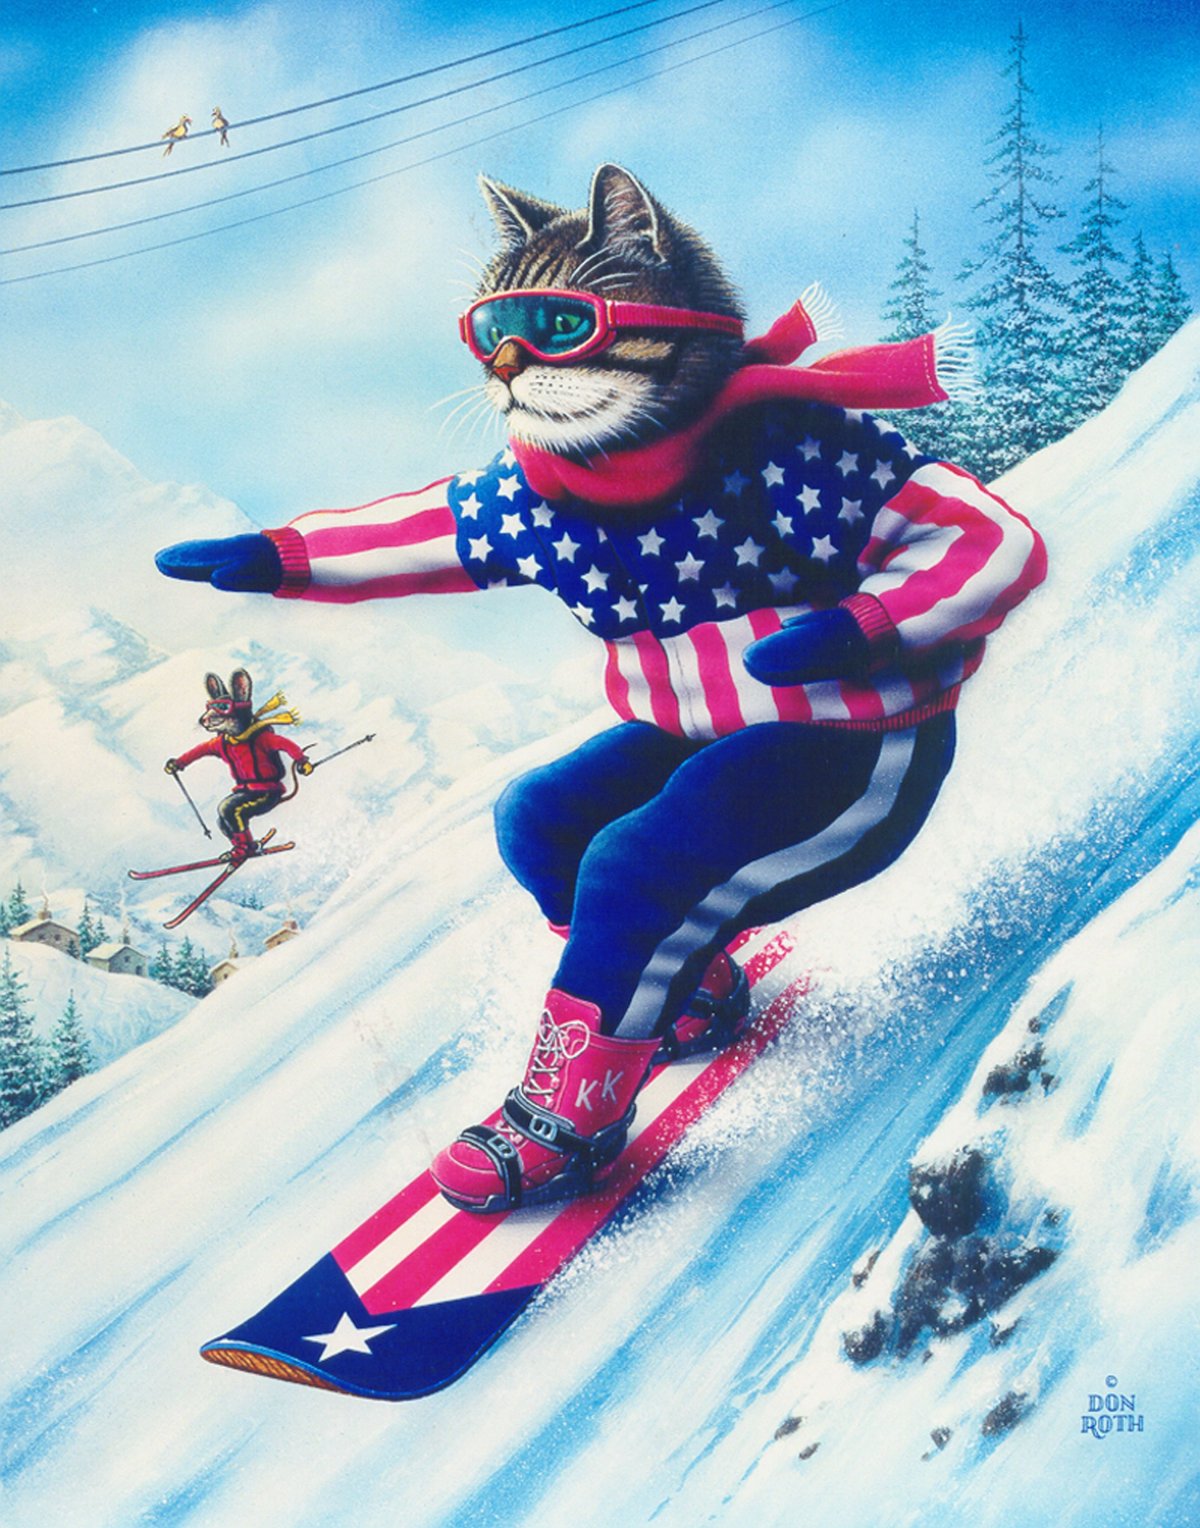 Кот на лыжах